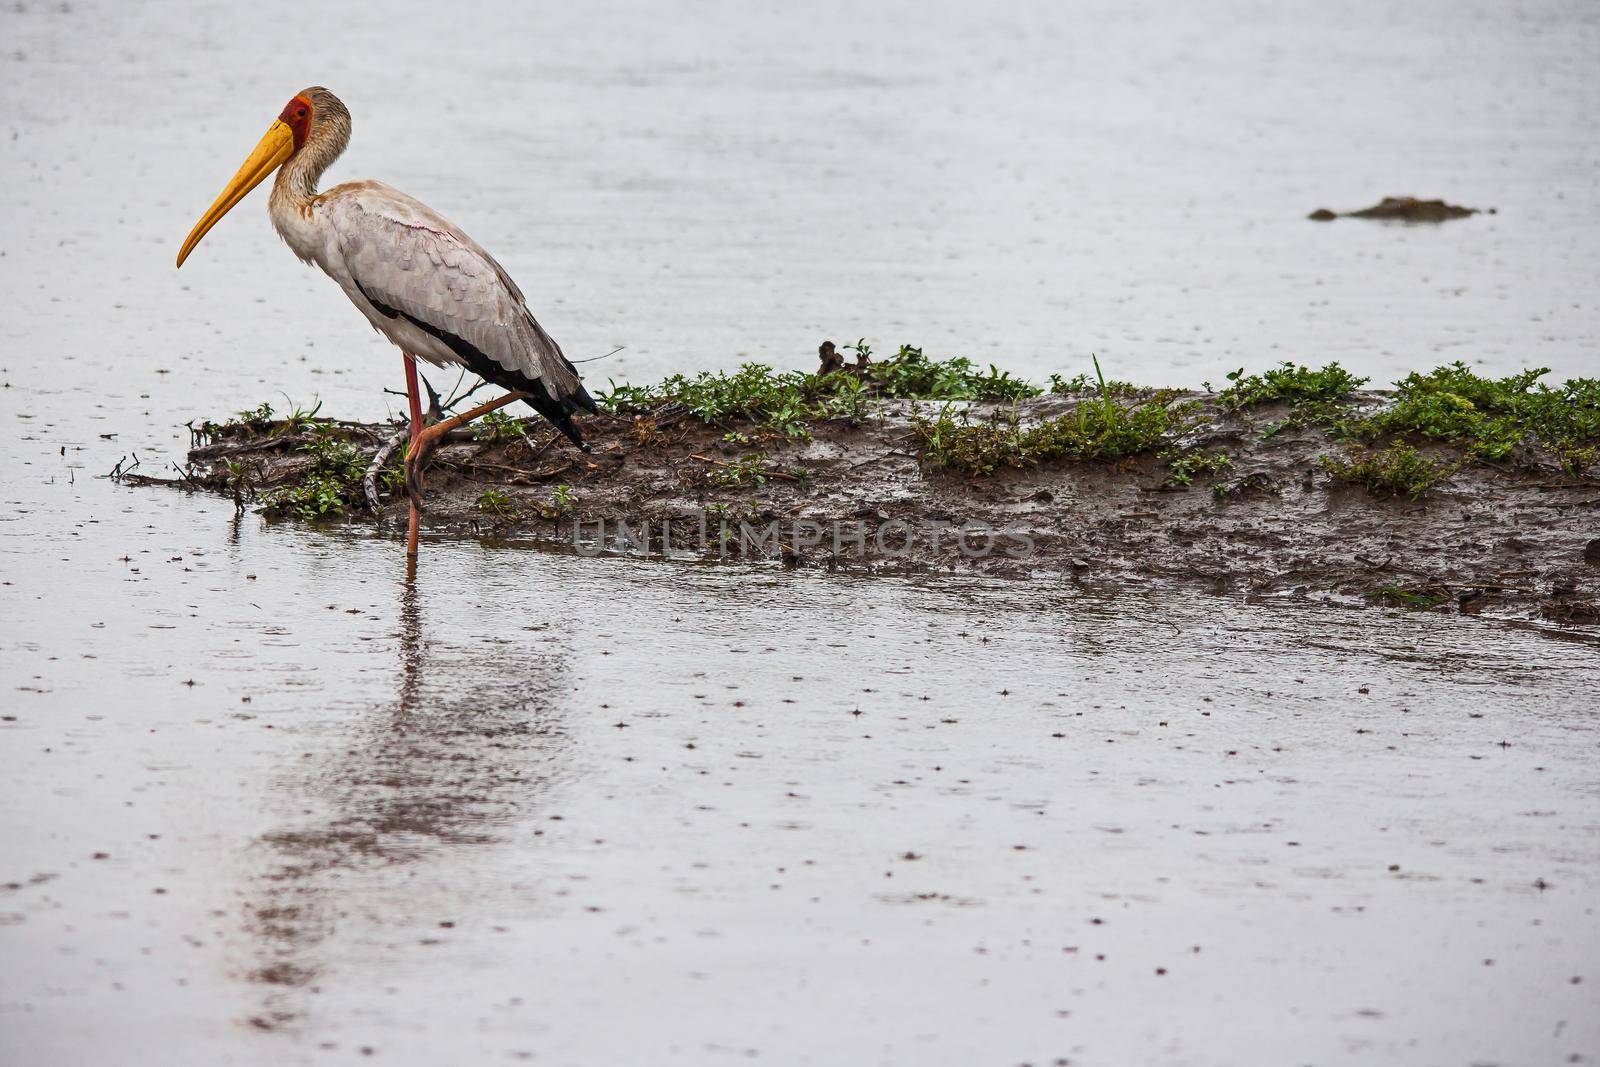 Yellow-billed Stork (Mycteria ibis) in the rain 15145 by kobus_peche